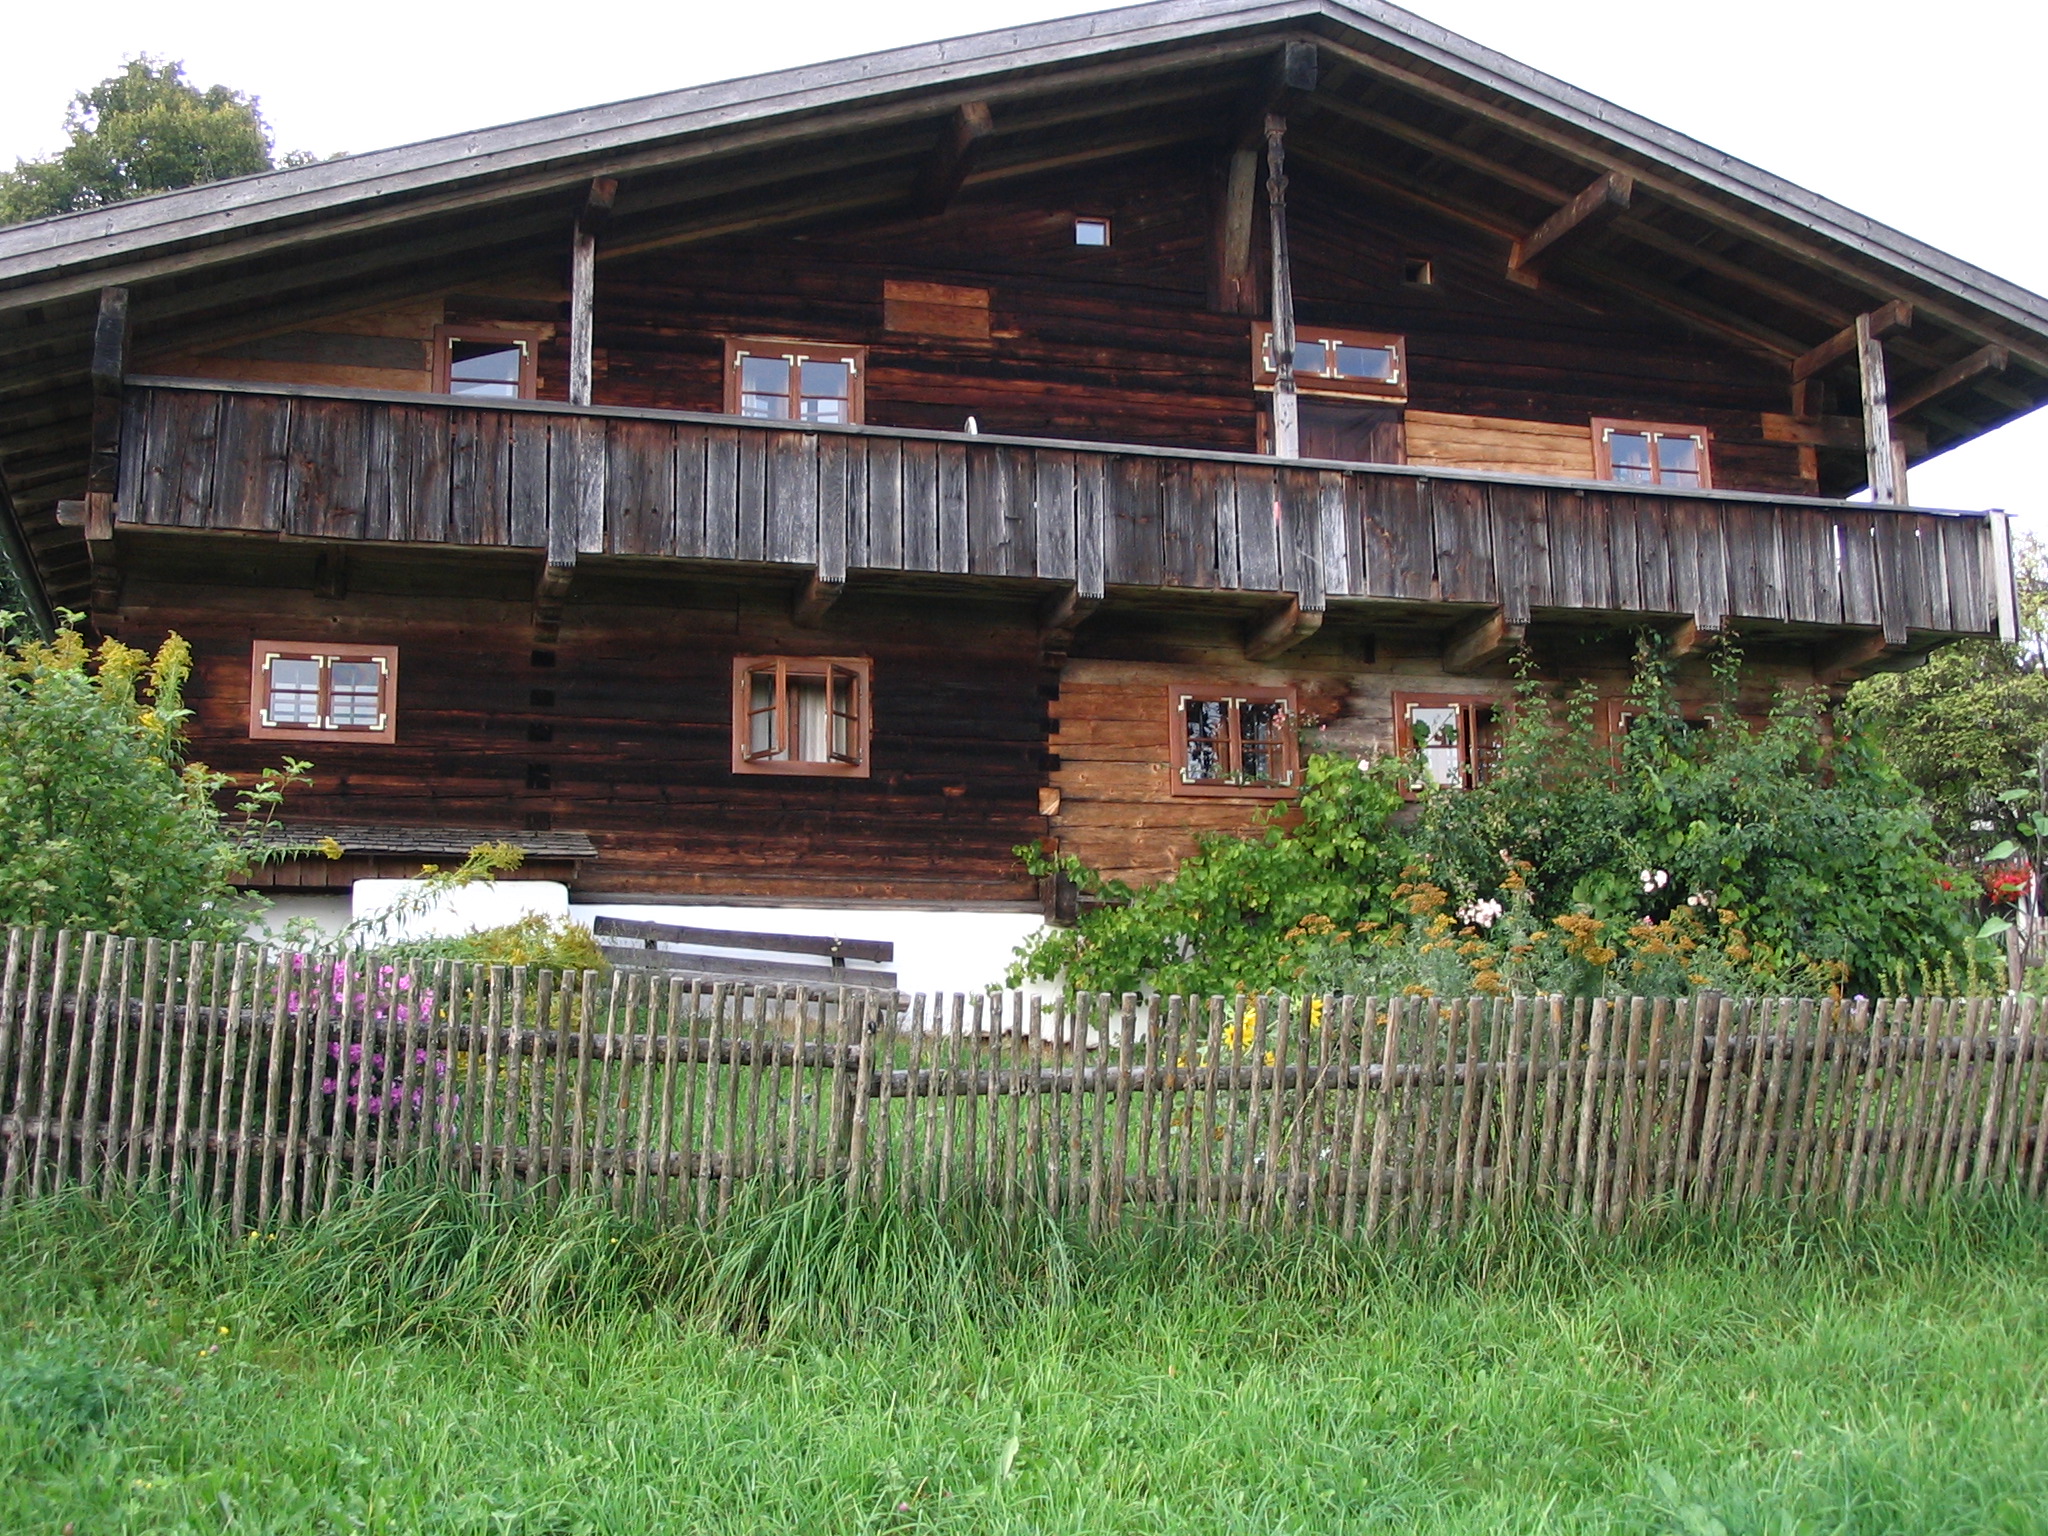 Ferienhaus mit drei Ferienwohnungen, Möbel von Schreinerhand gefertigt, gemütliche Atmosphäre